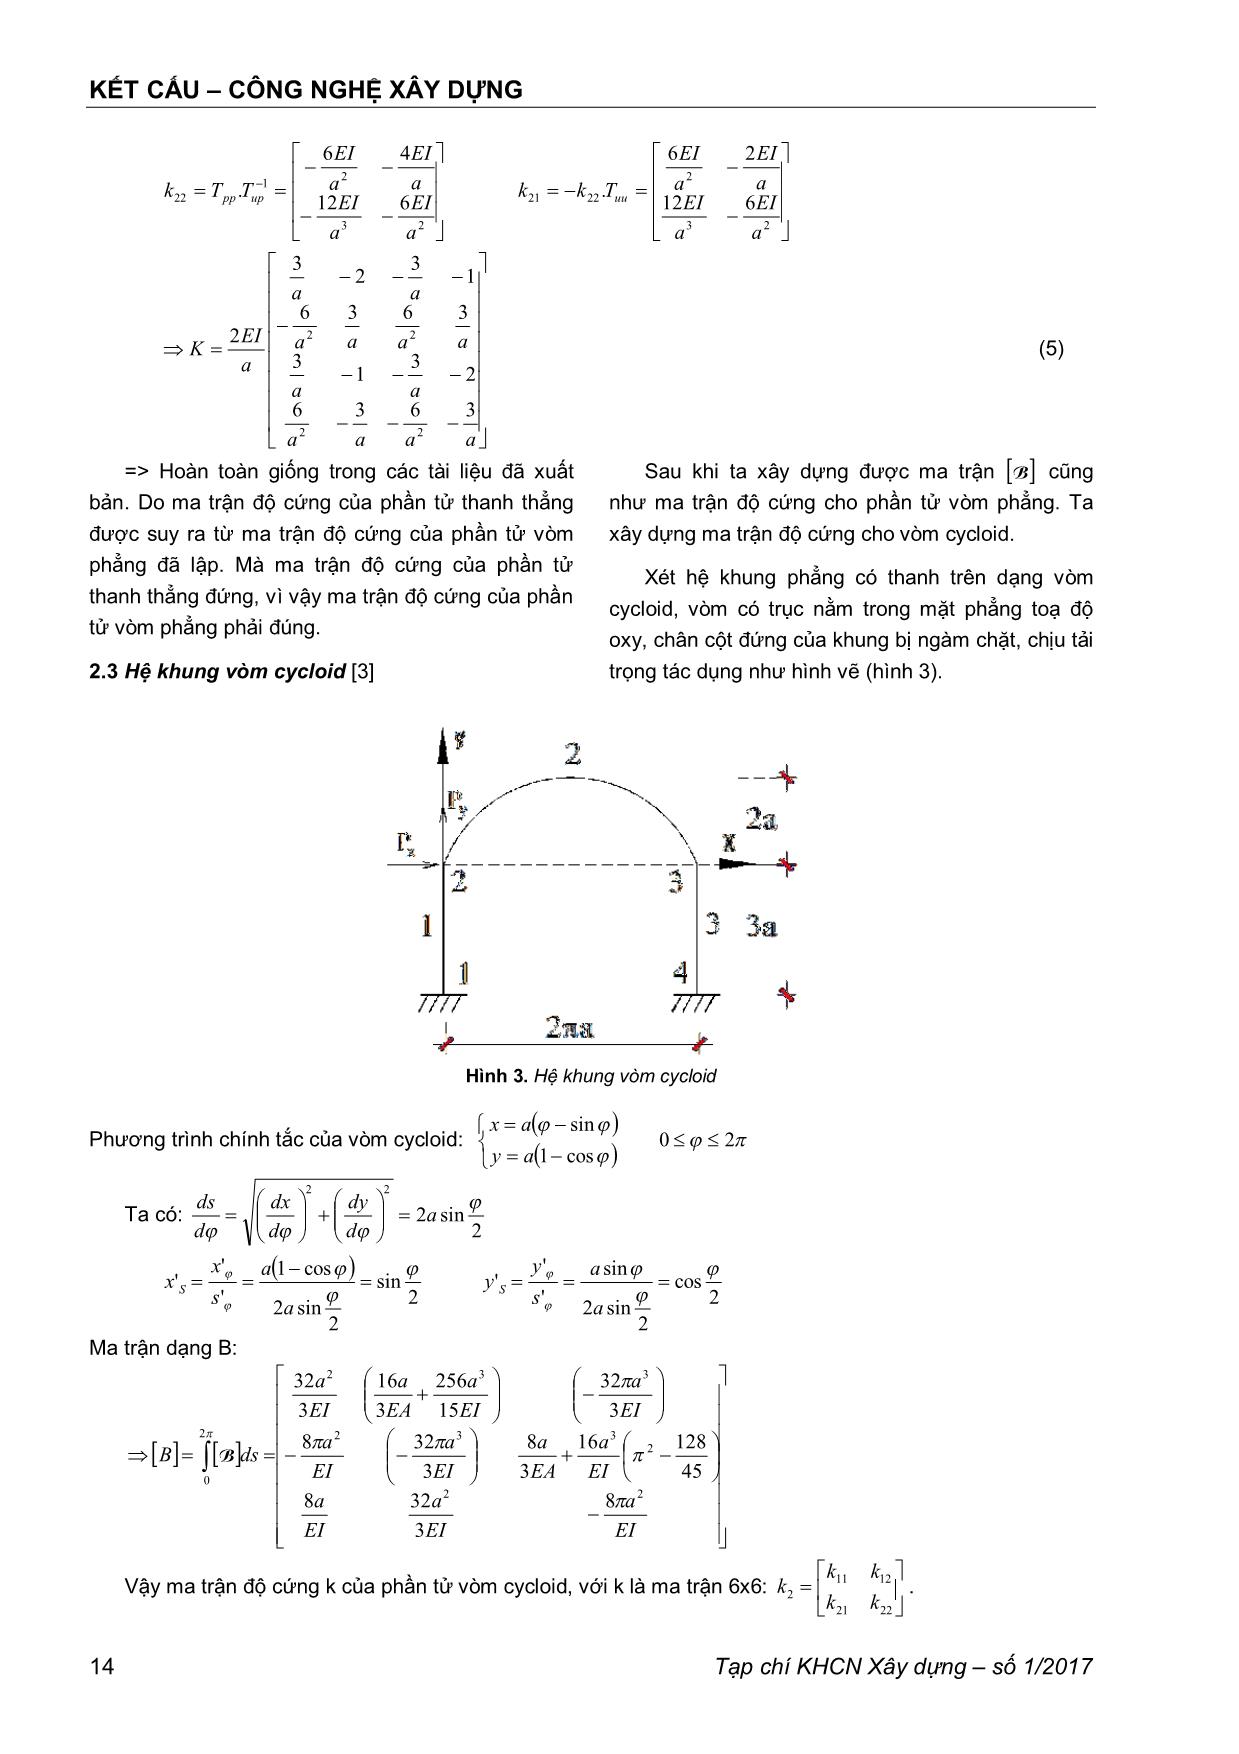 Phương pháp phần tử hữu hạn trong tính toán nội lực hệ khung vòm Cycloid phẳng trang 5